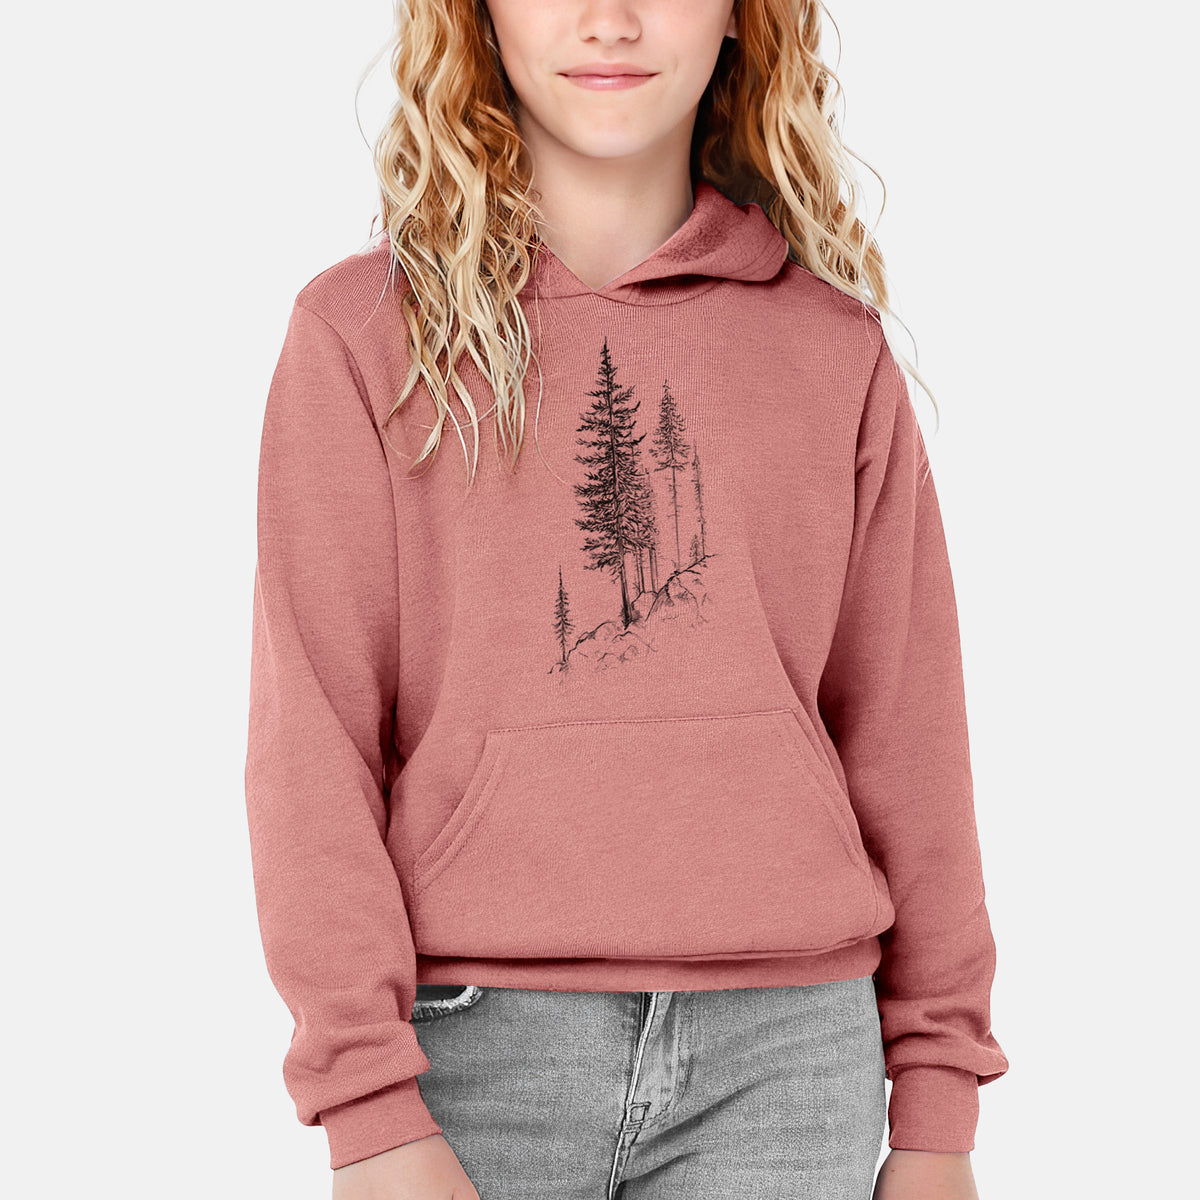 Cliffside Pines - Youth Hoodie Sweatshirt